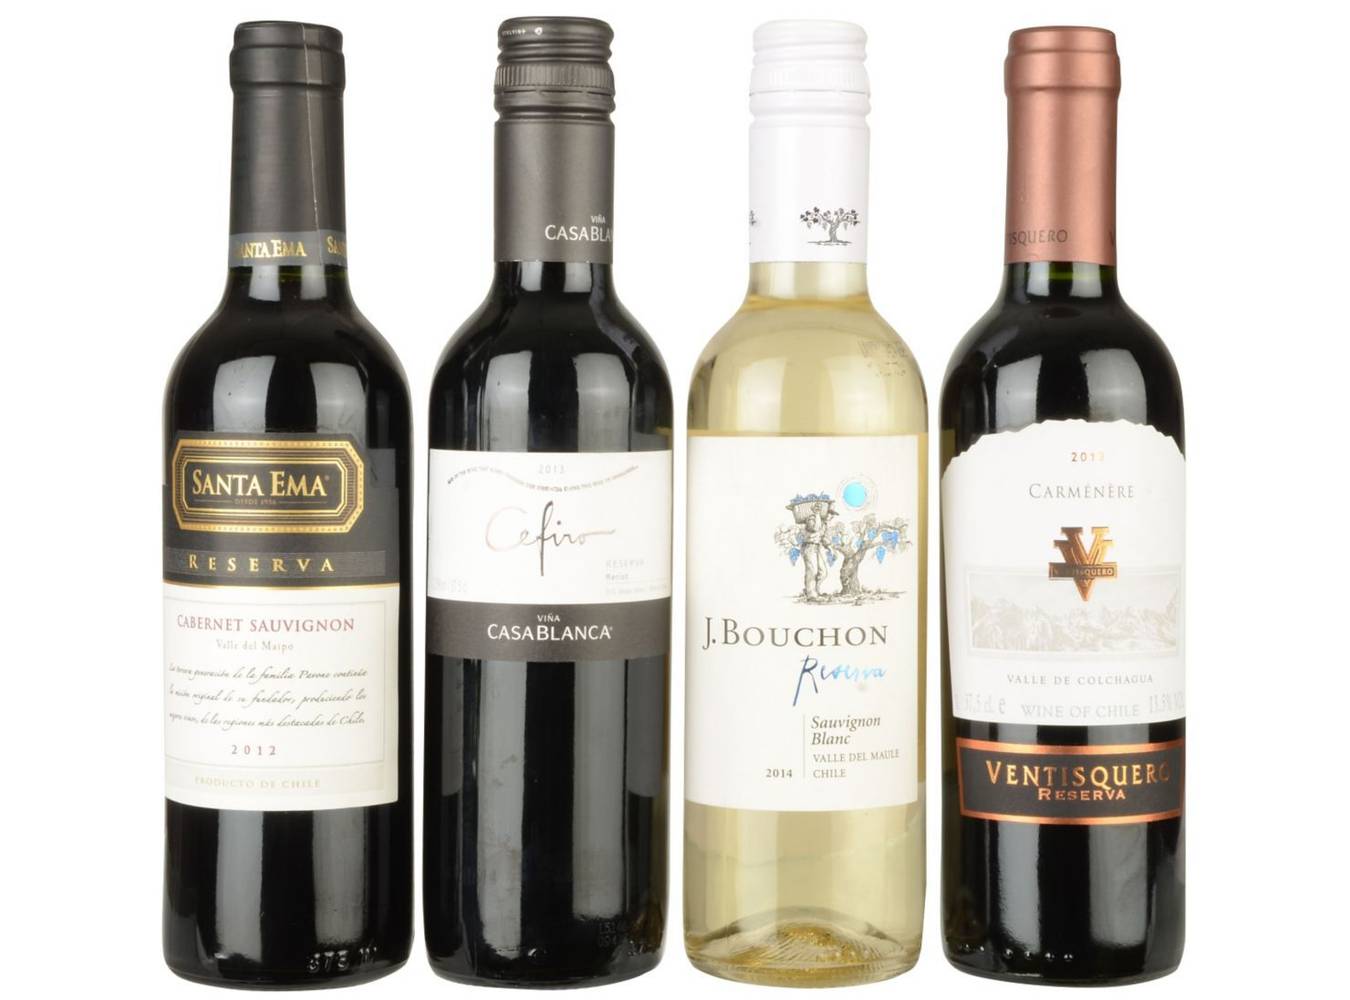 La vinoteca selección catas reservas (4 x 375 ml)